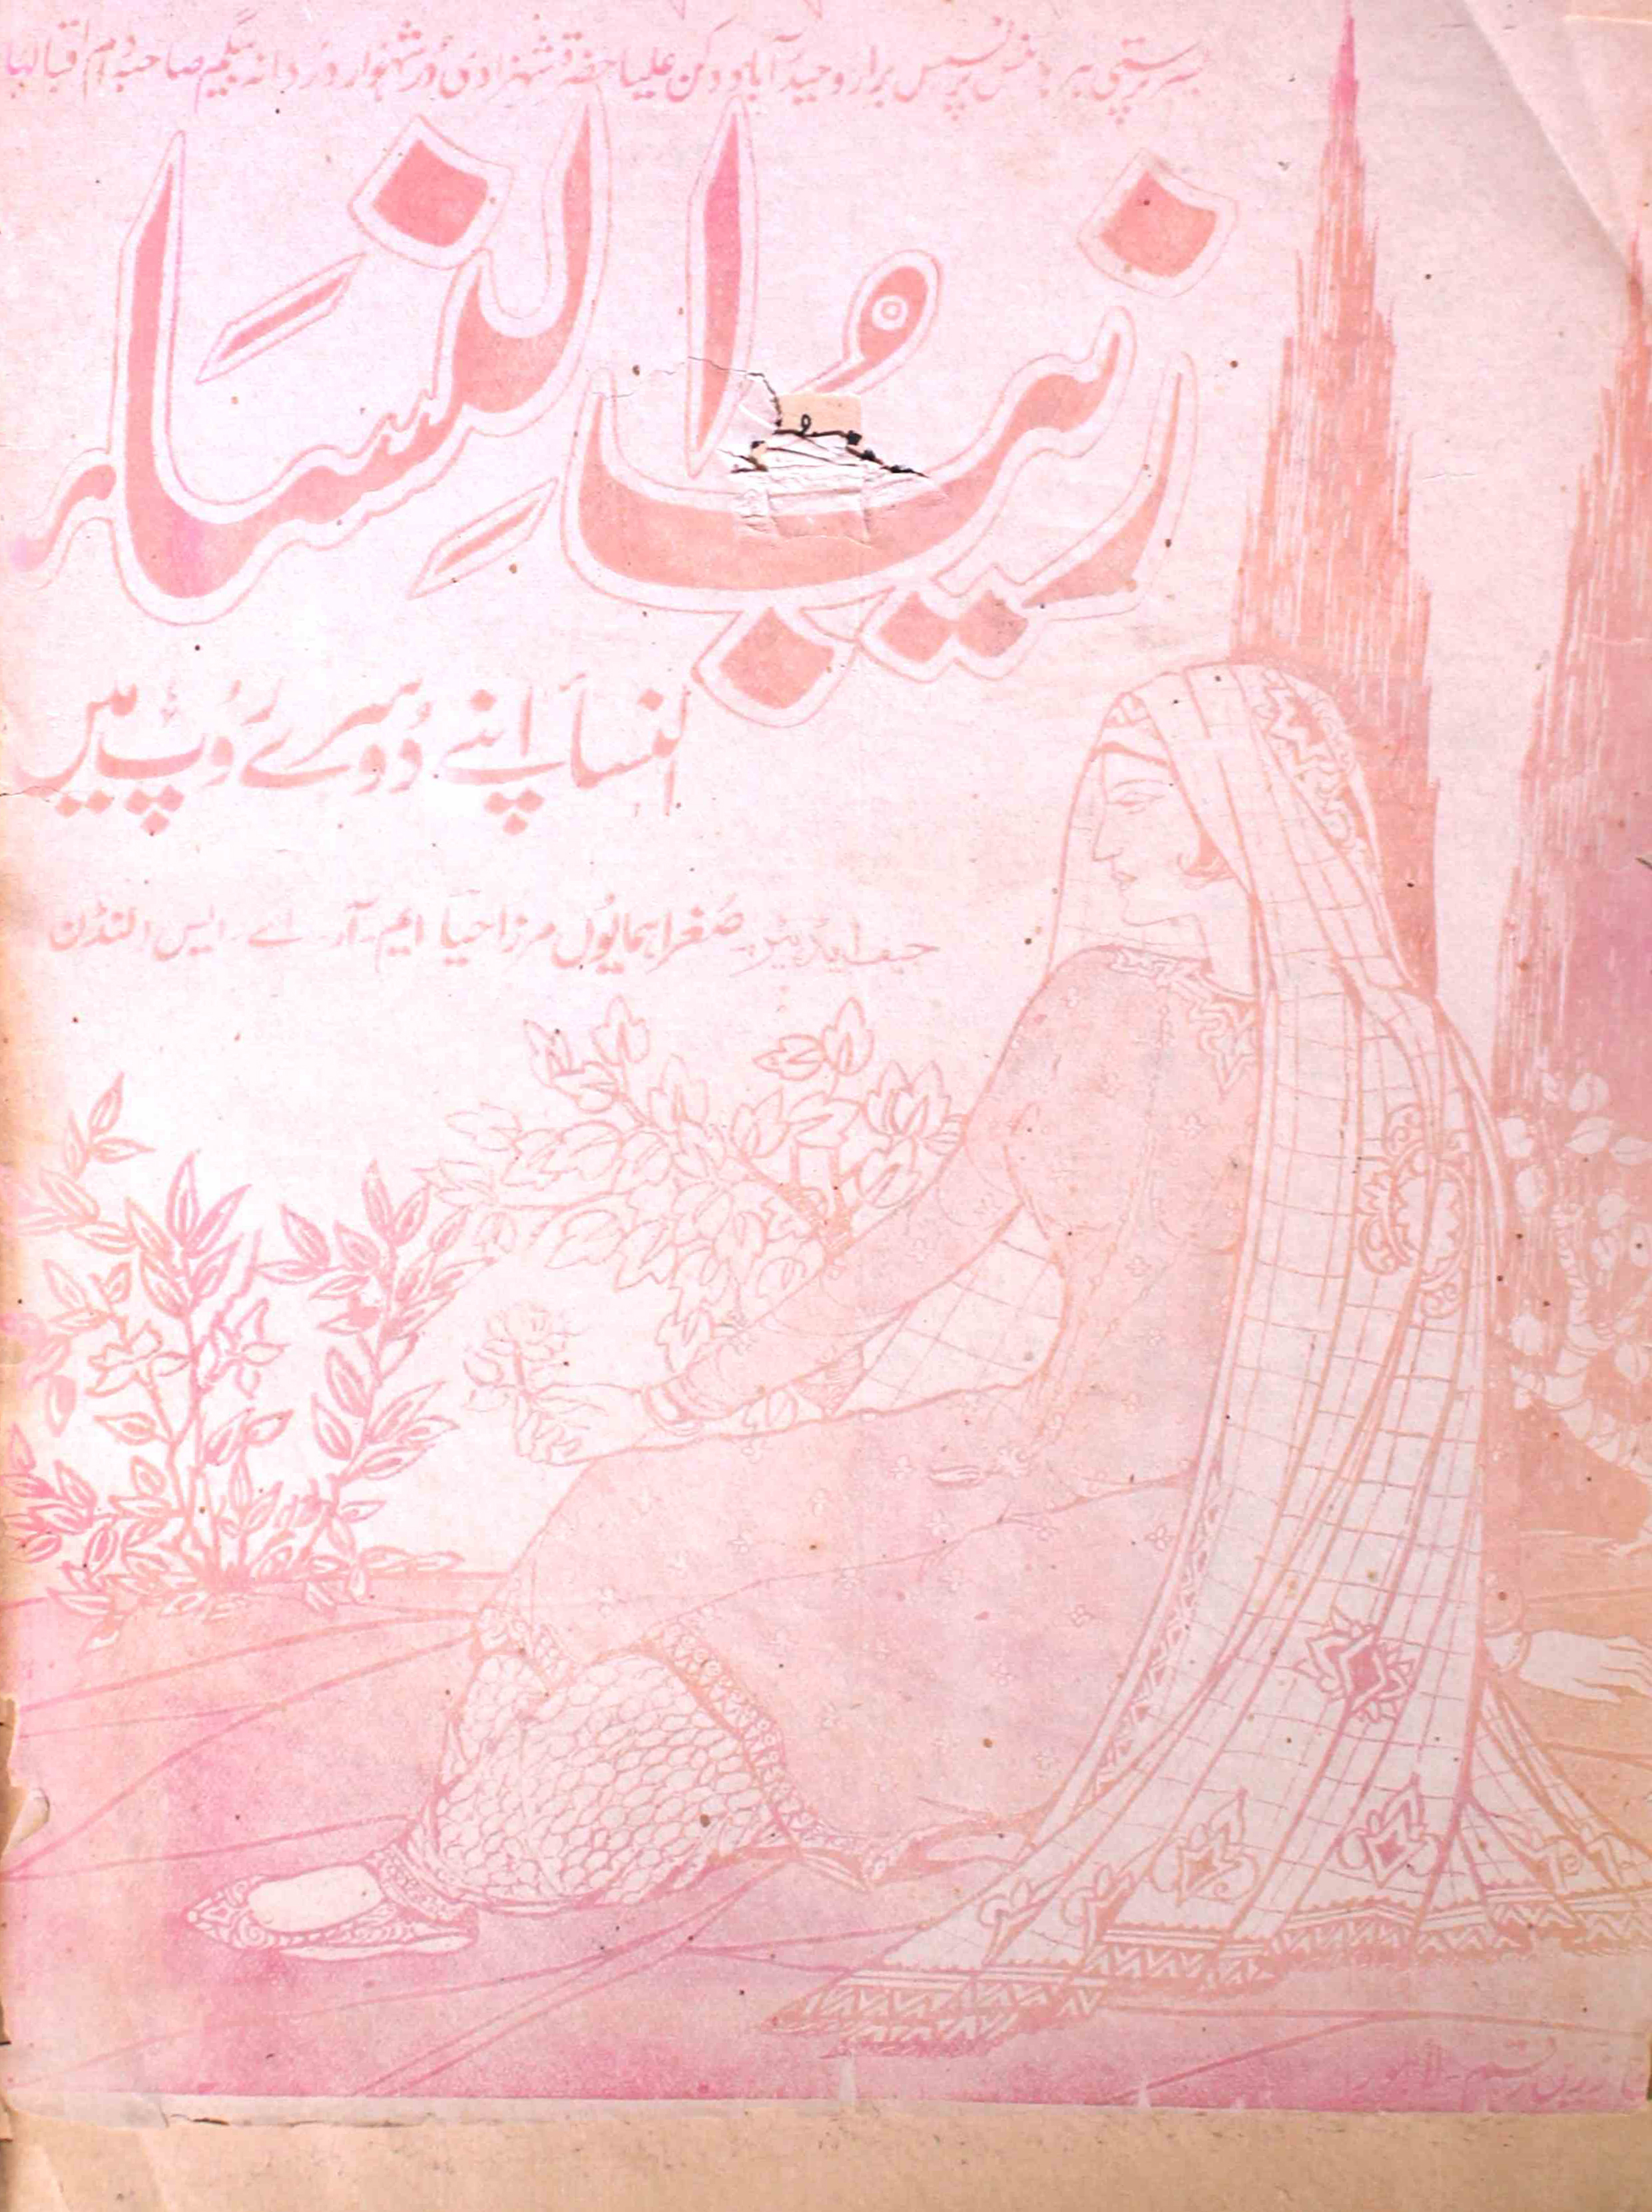 Zaib-un-nisa-shumaara-007-sughra-humaun-mirza-magazines